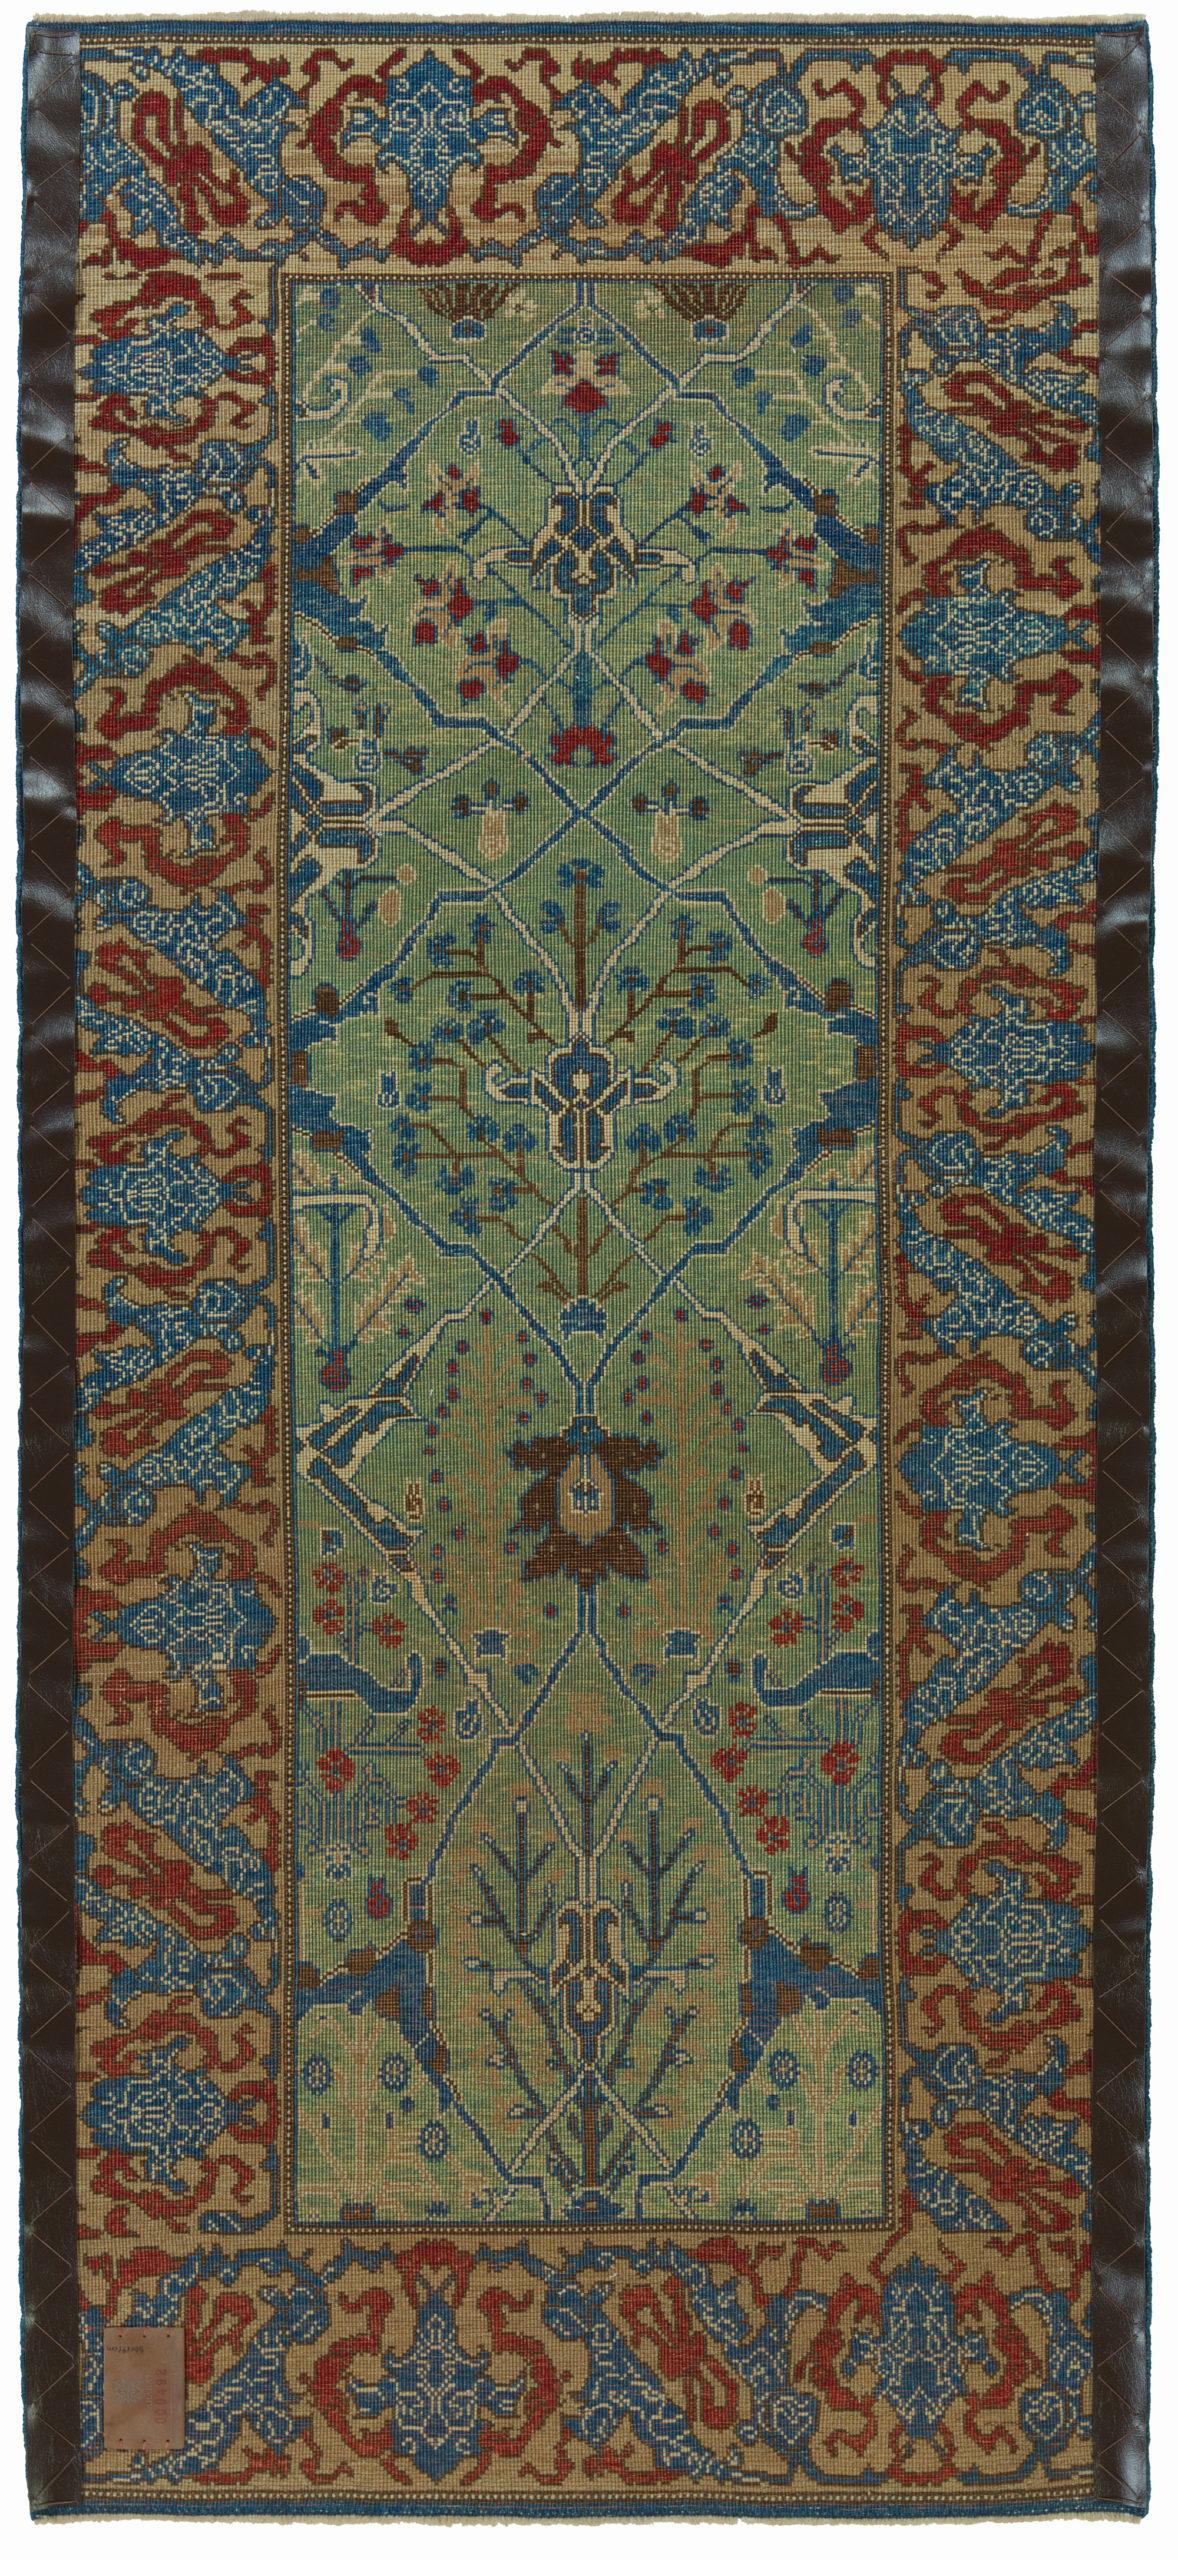 Die Designquelle des Teppichs stammt aus dem Buch Islamic Carpets, Joseph V. McMullan, Near Eastern Art Research Center Inc. 1965, New York, Nr. 22. Dies ist ein System von Teppichen mit Arabeskenmuster aus dem 19. Jahrhundert aus der Region Gerous